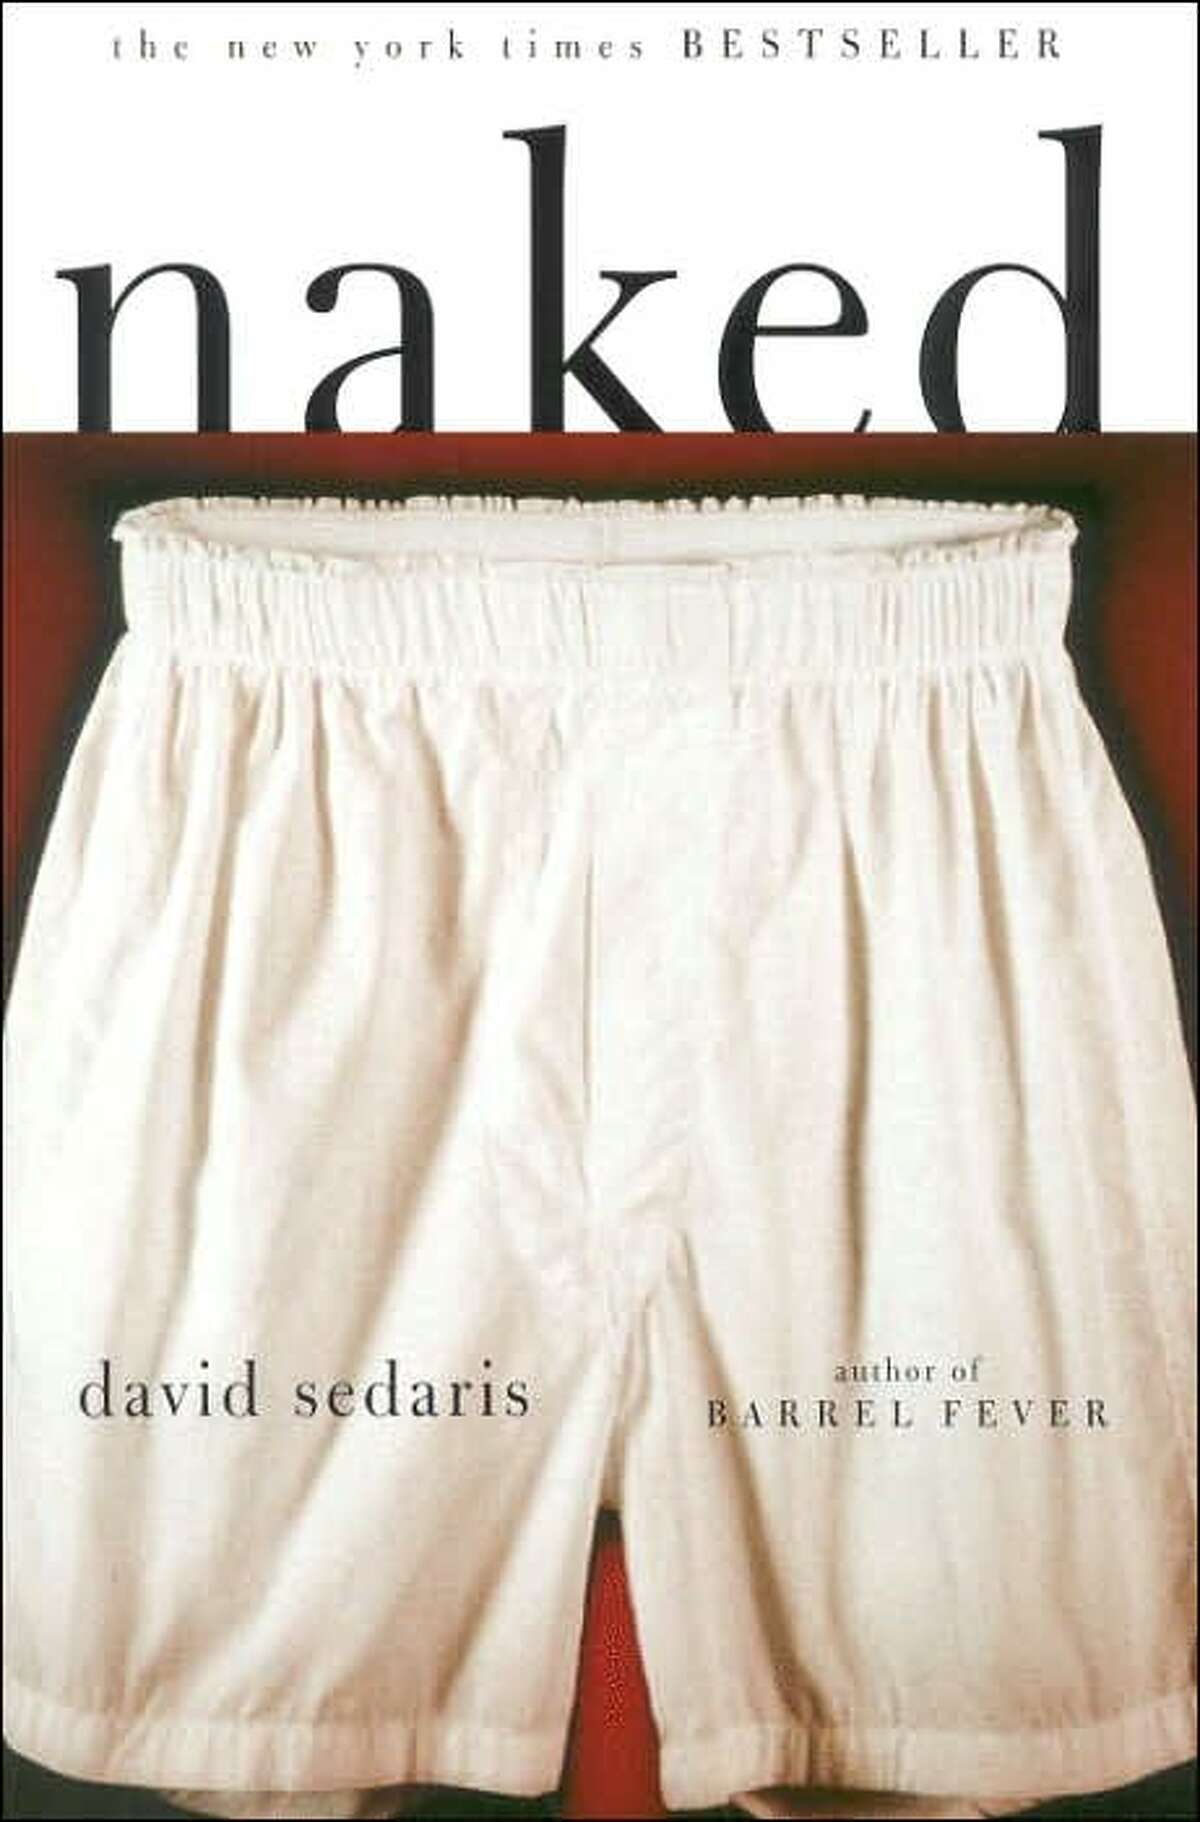 David Sedaris' "Naked"